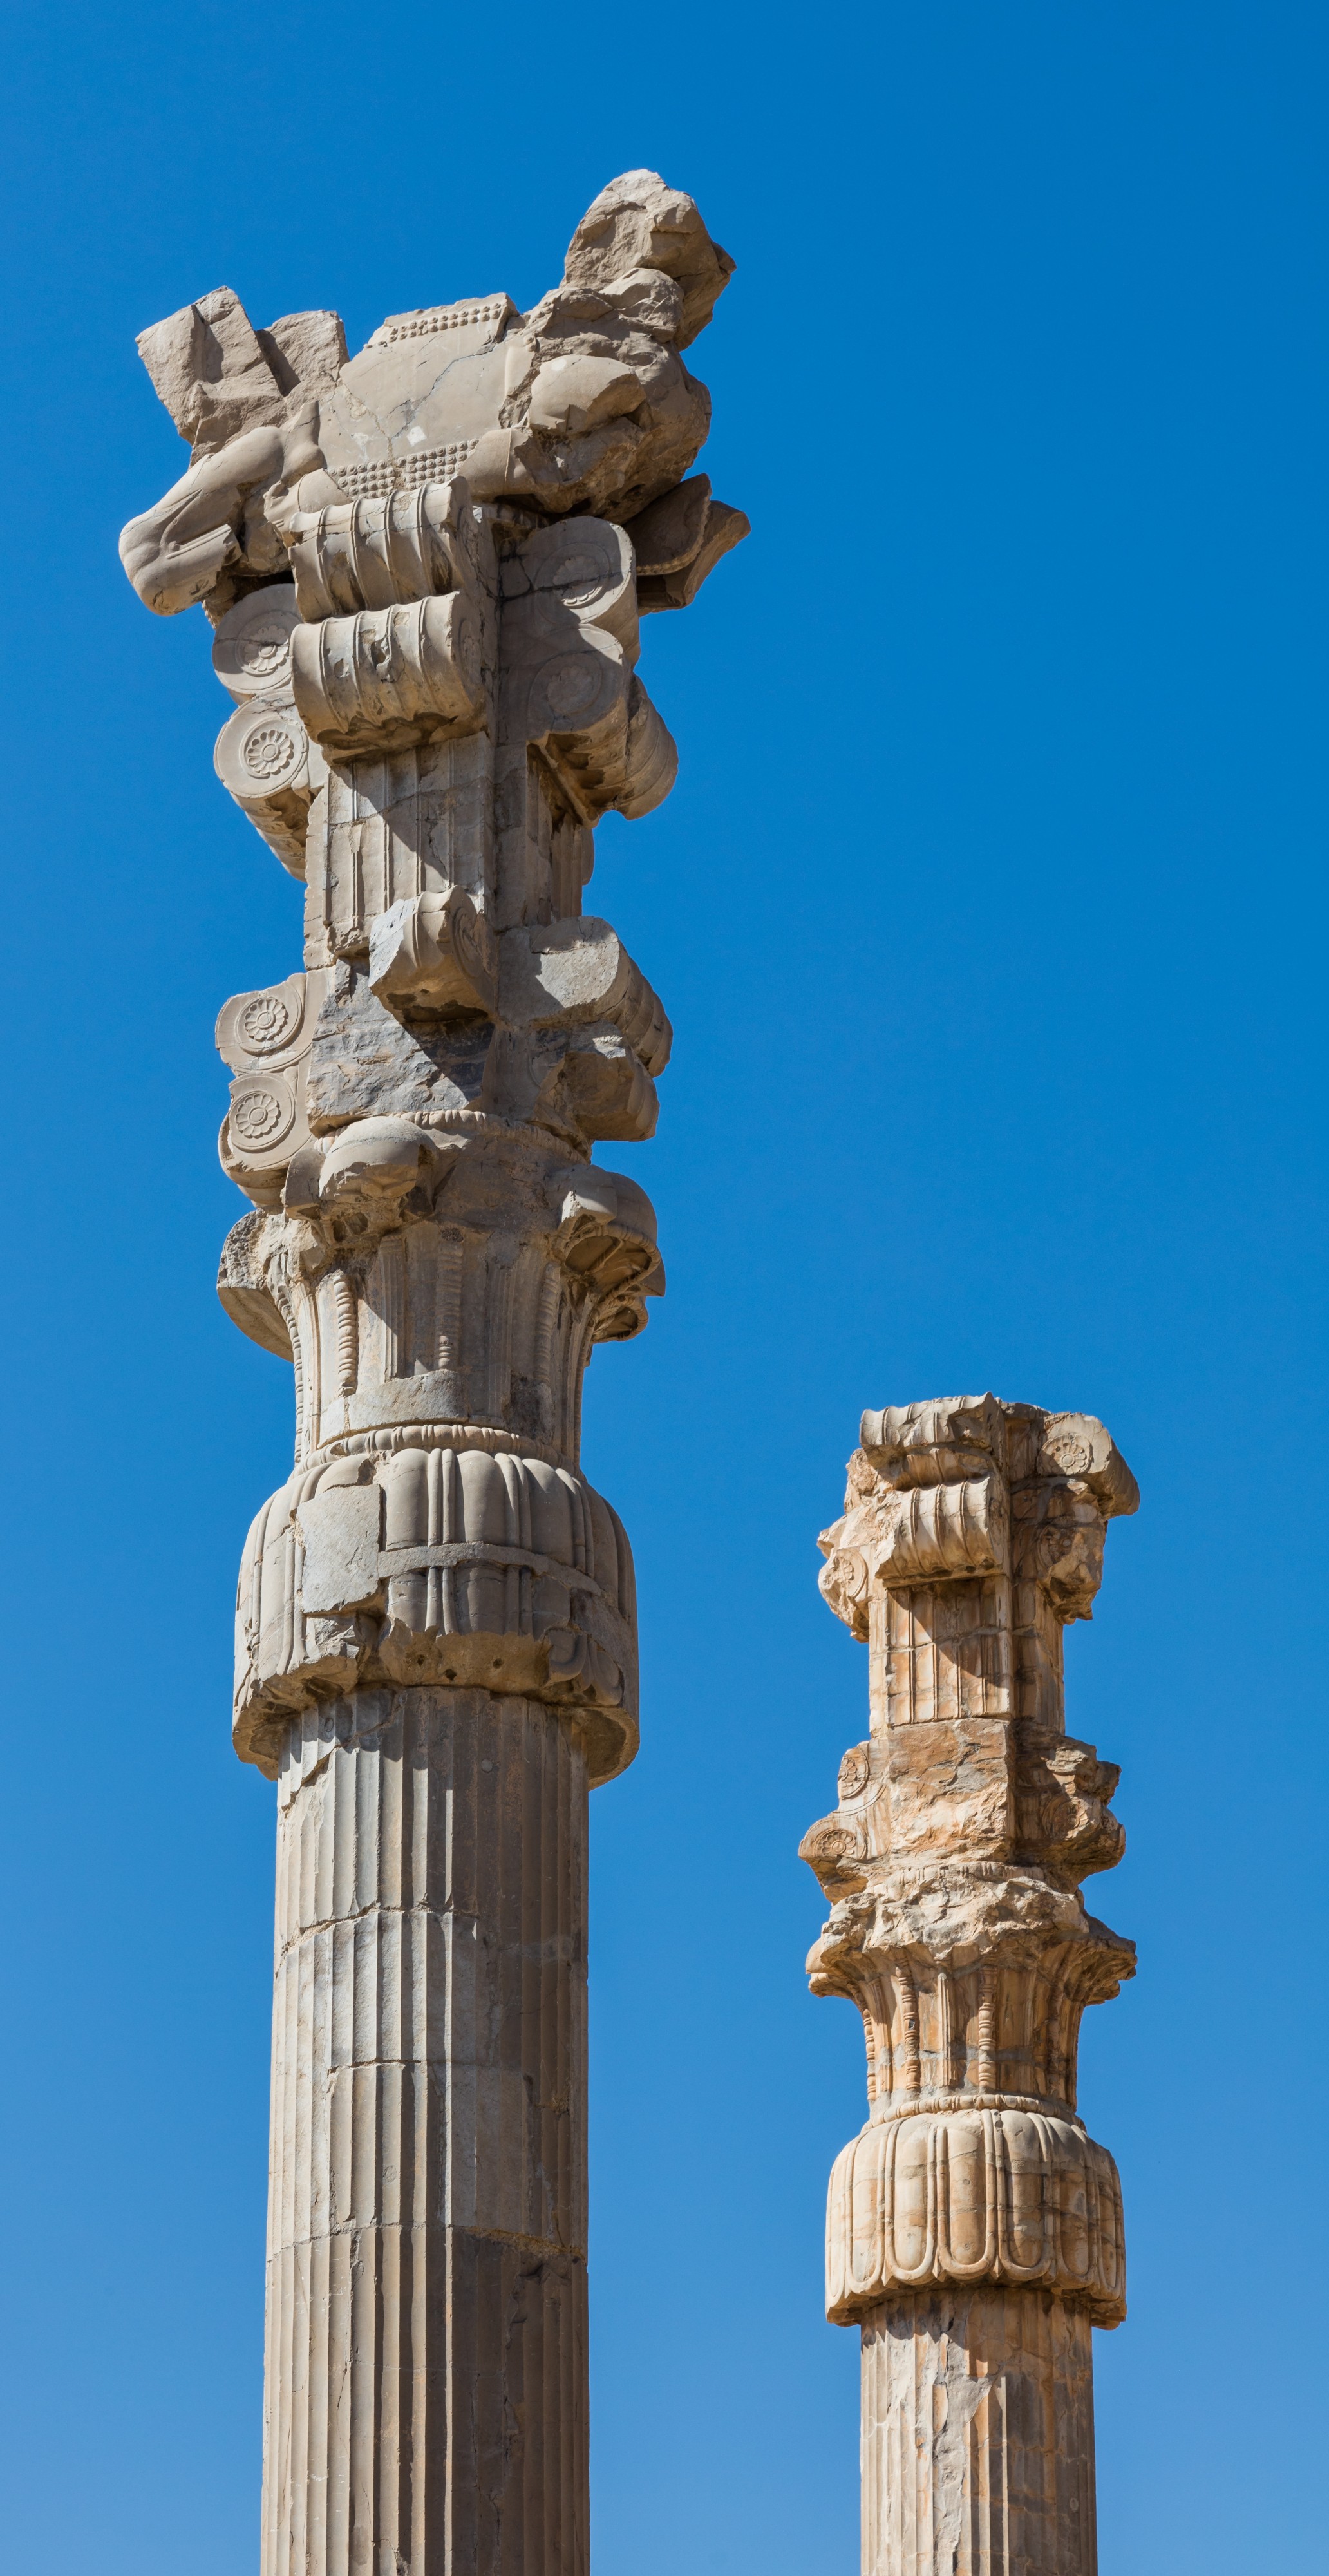 Persépolis, Irán, 2016-09-24, DD 29